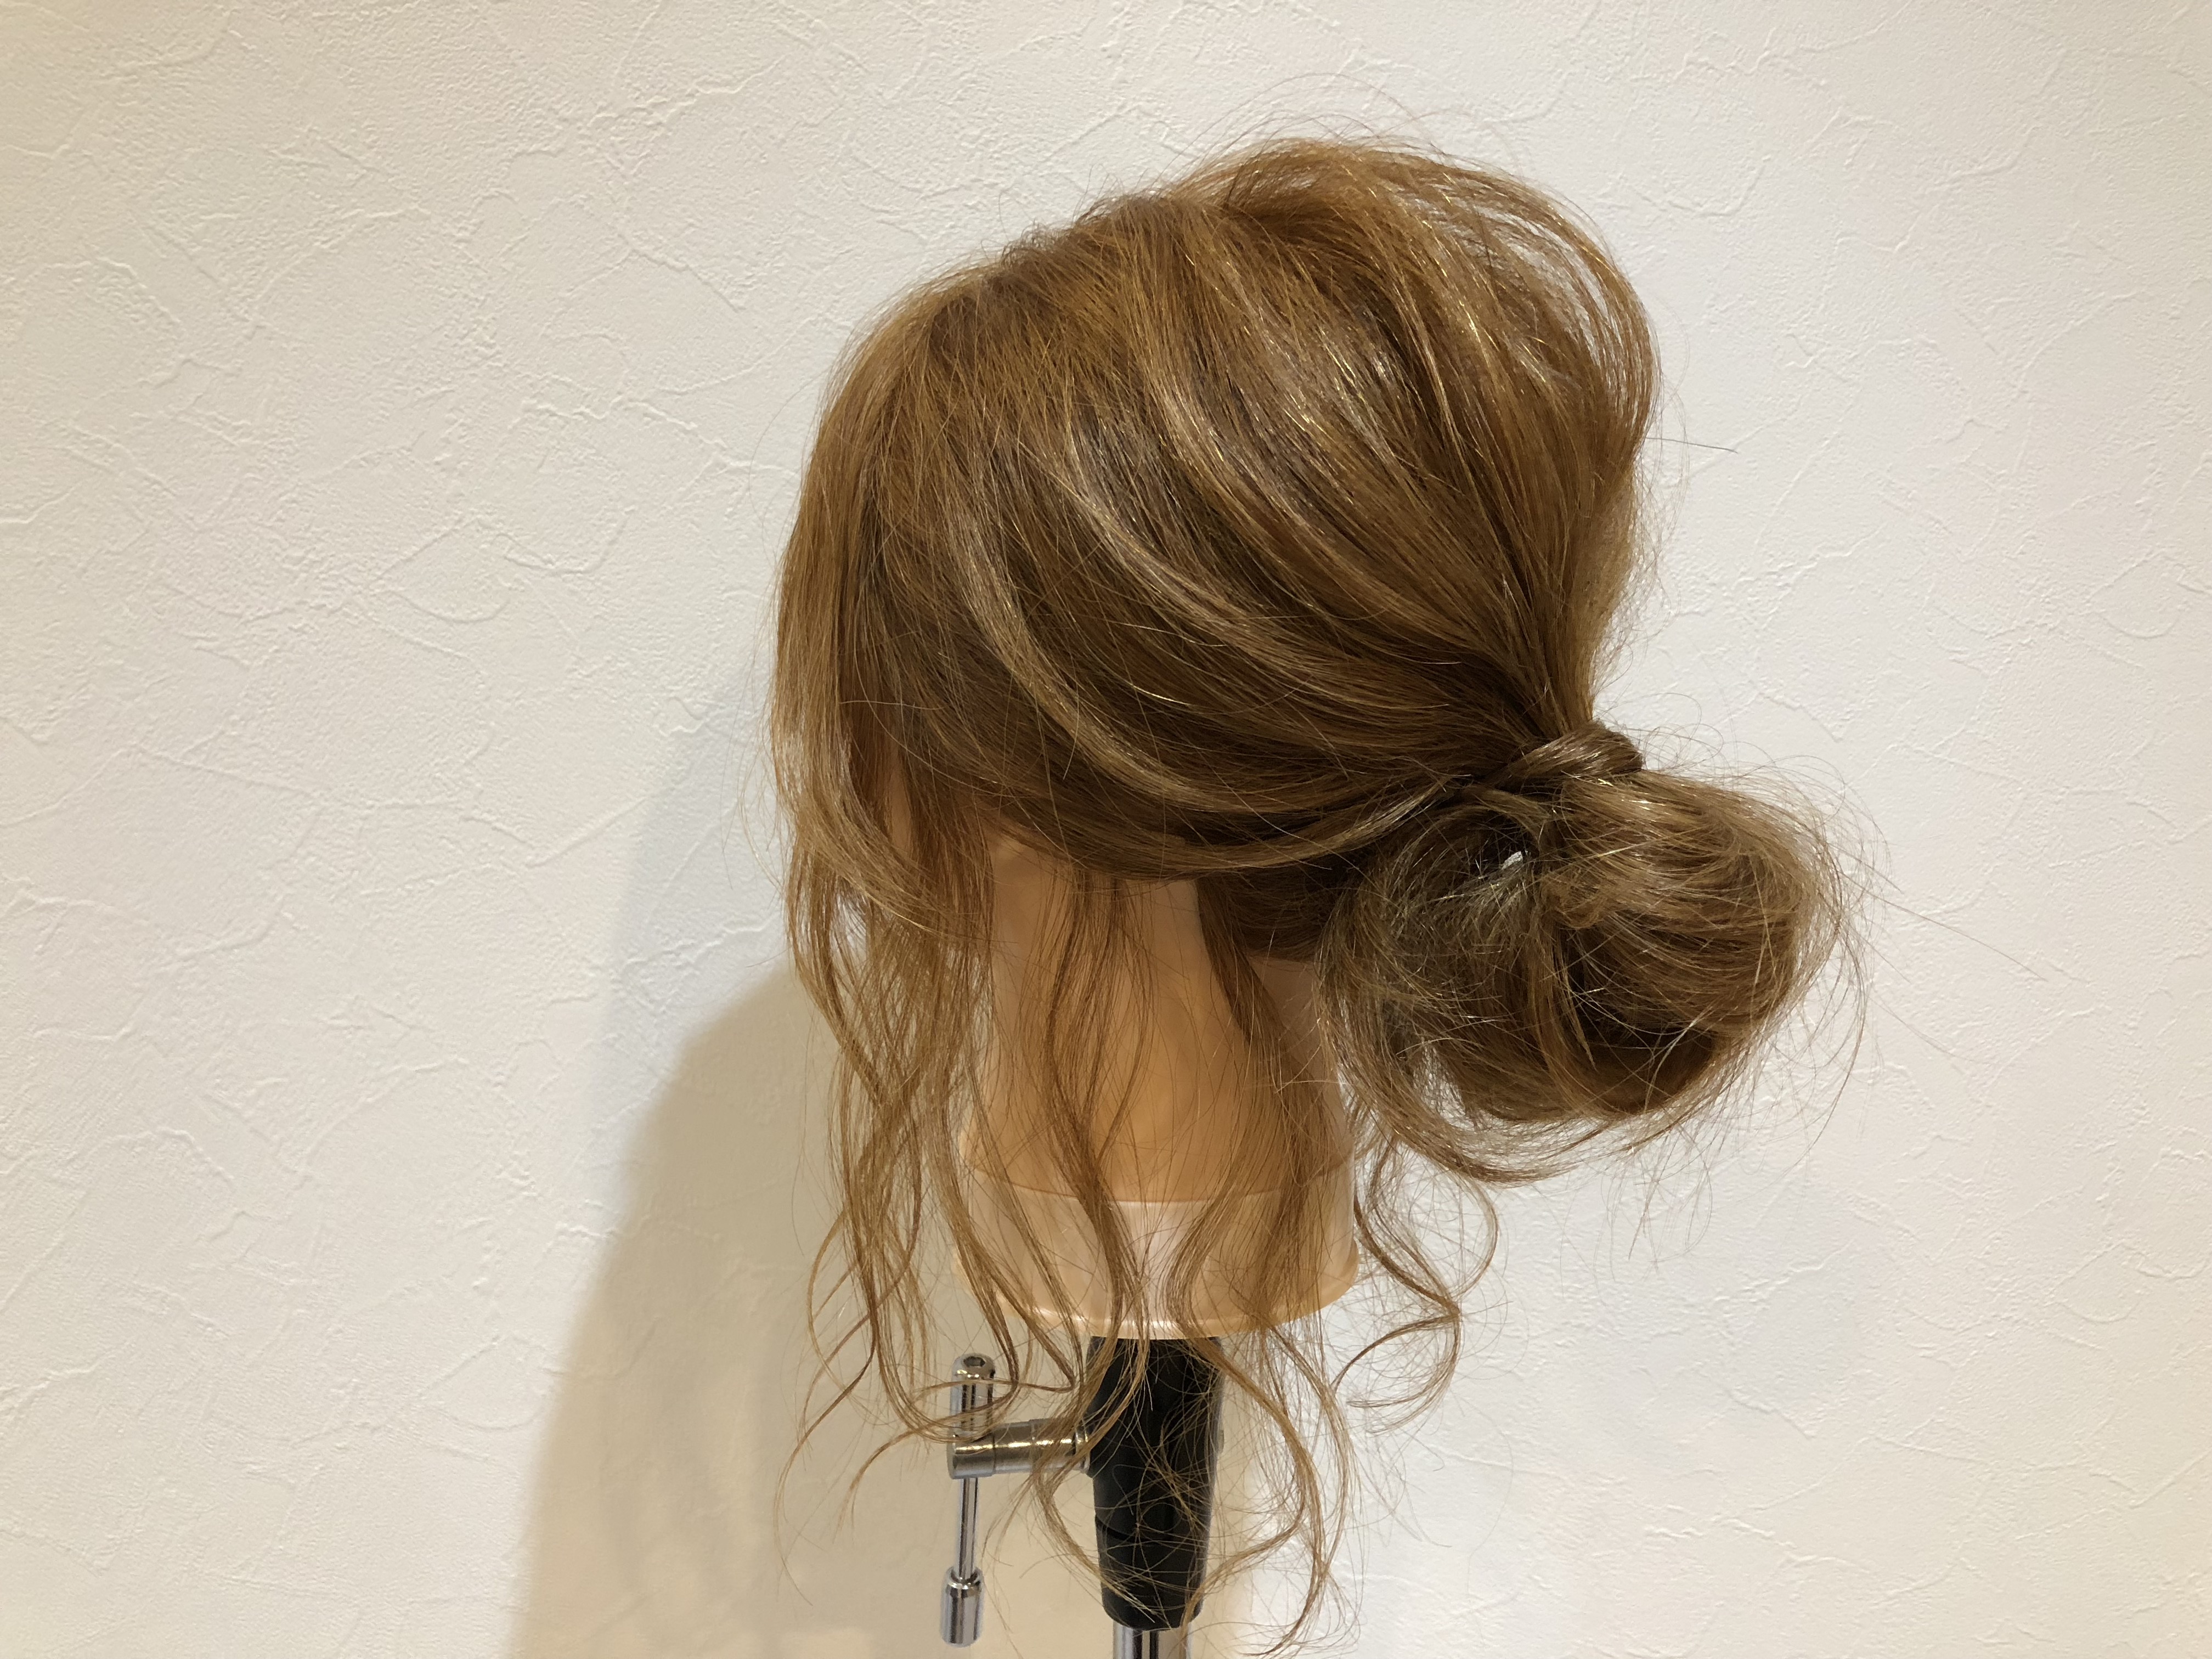 お祭りやアウトドアなどアクティブヘアに 超簡単ミディアムヘアアレンジ 秋津の美容室 美容院hair Design Supremu シュプレミュー